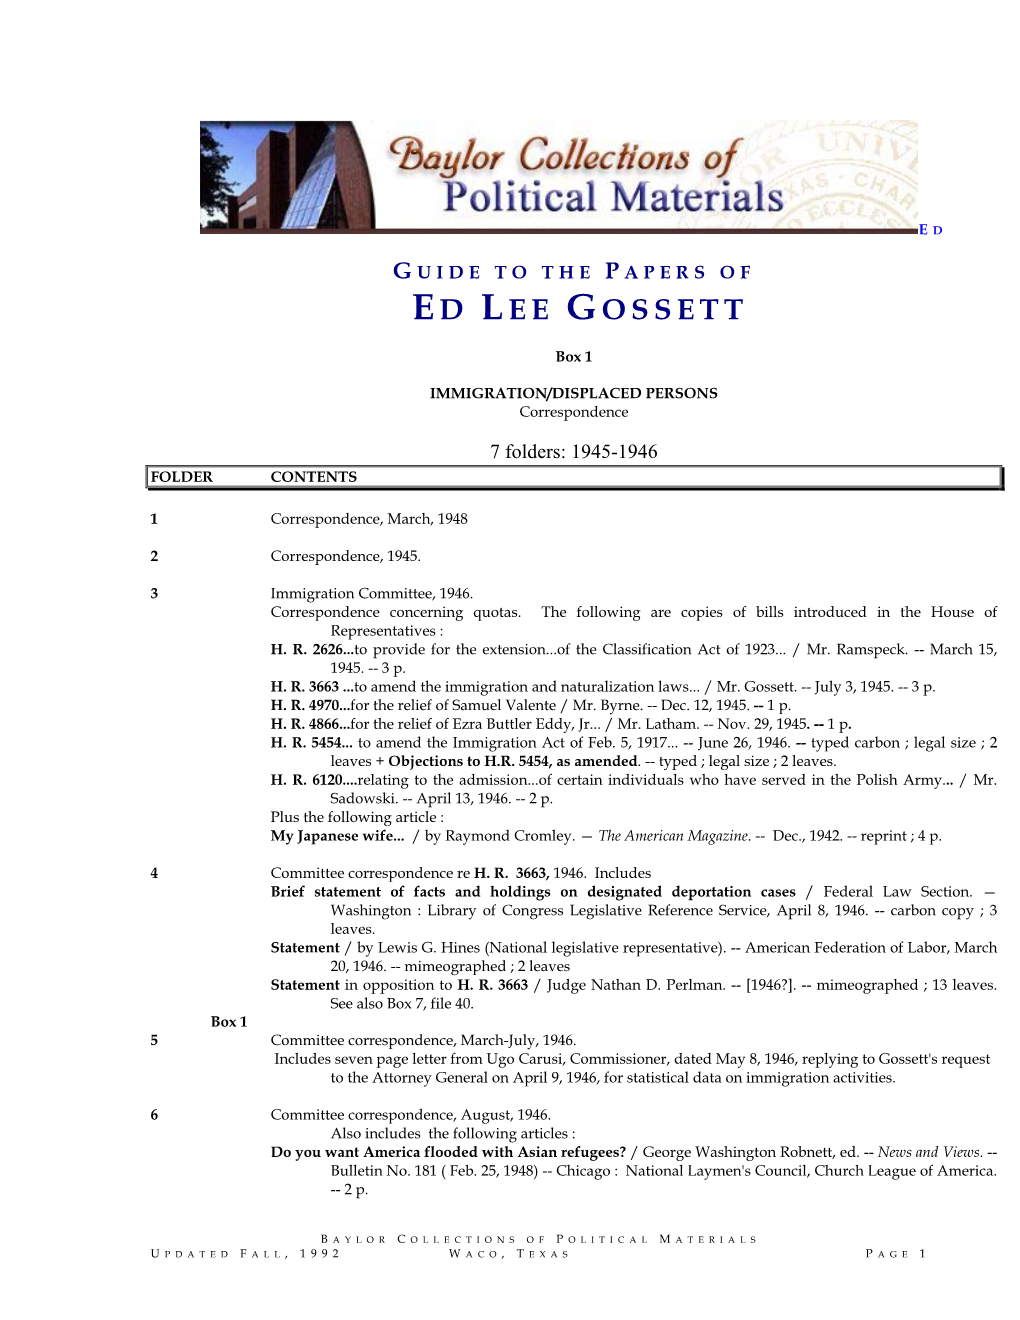 Ed Lee Gossett Papers